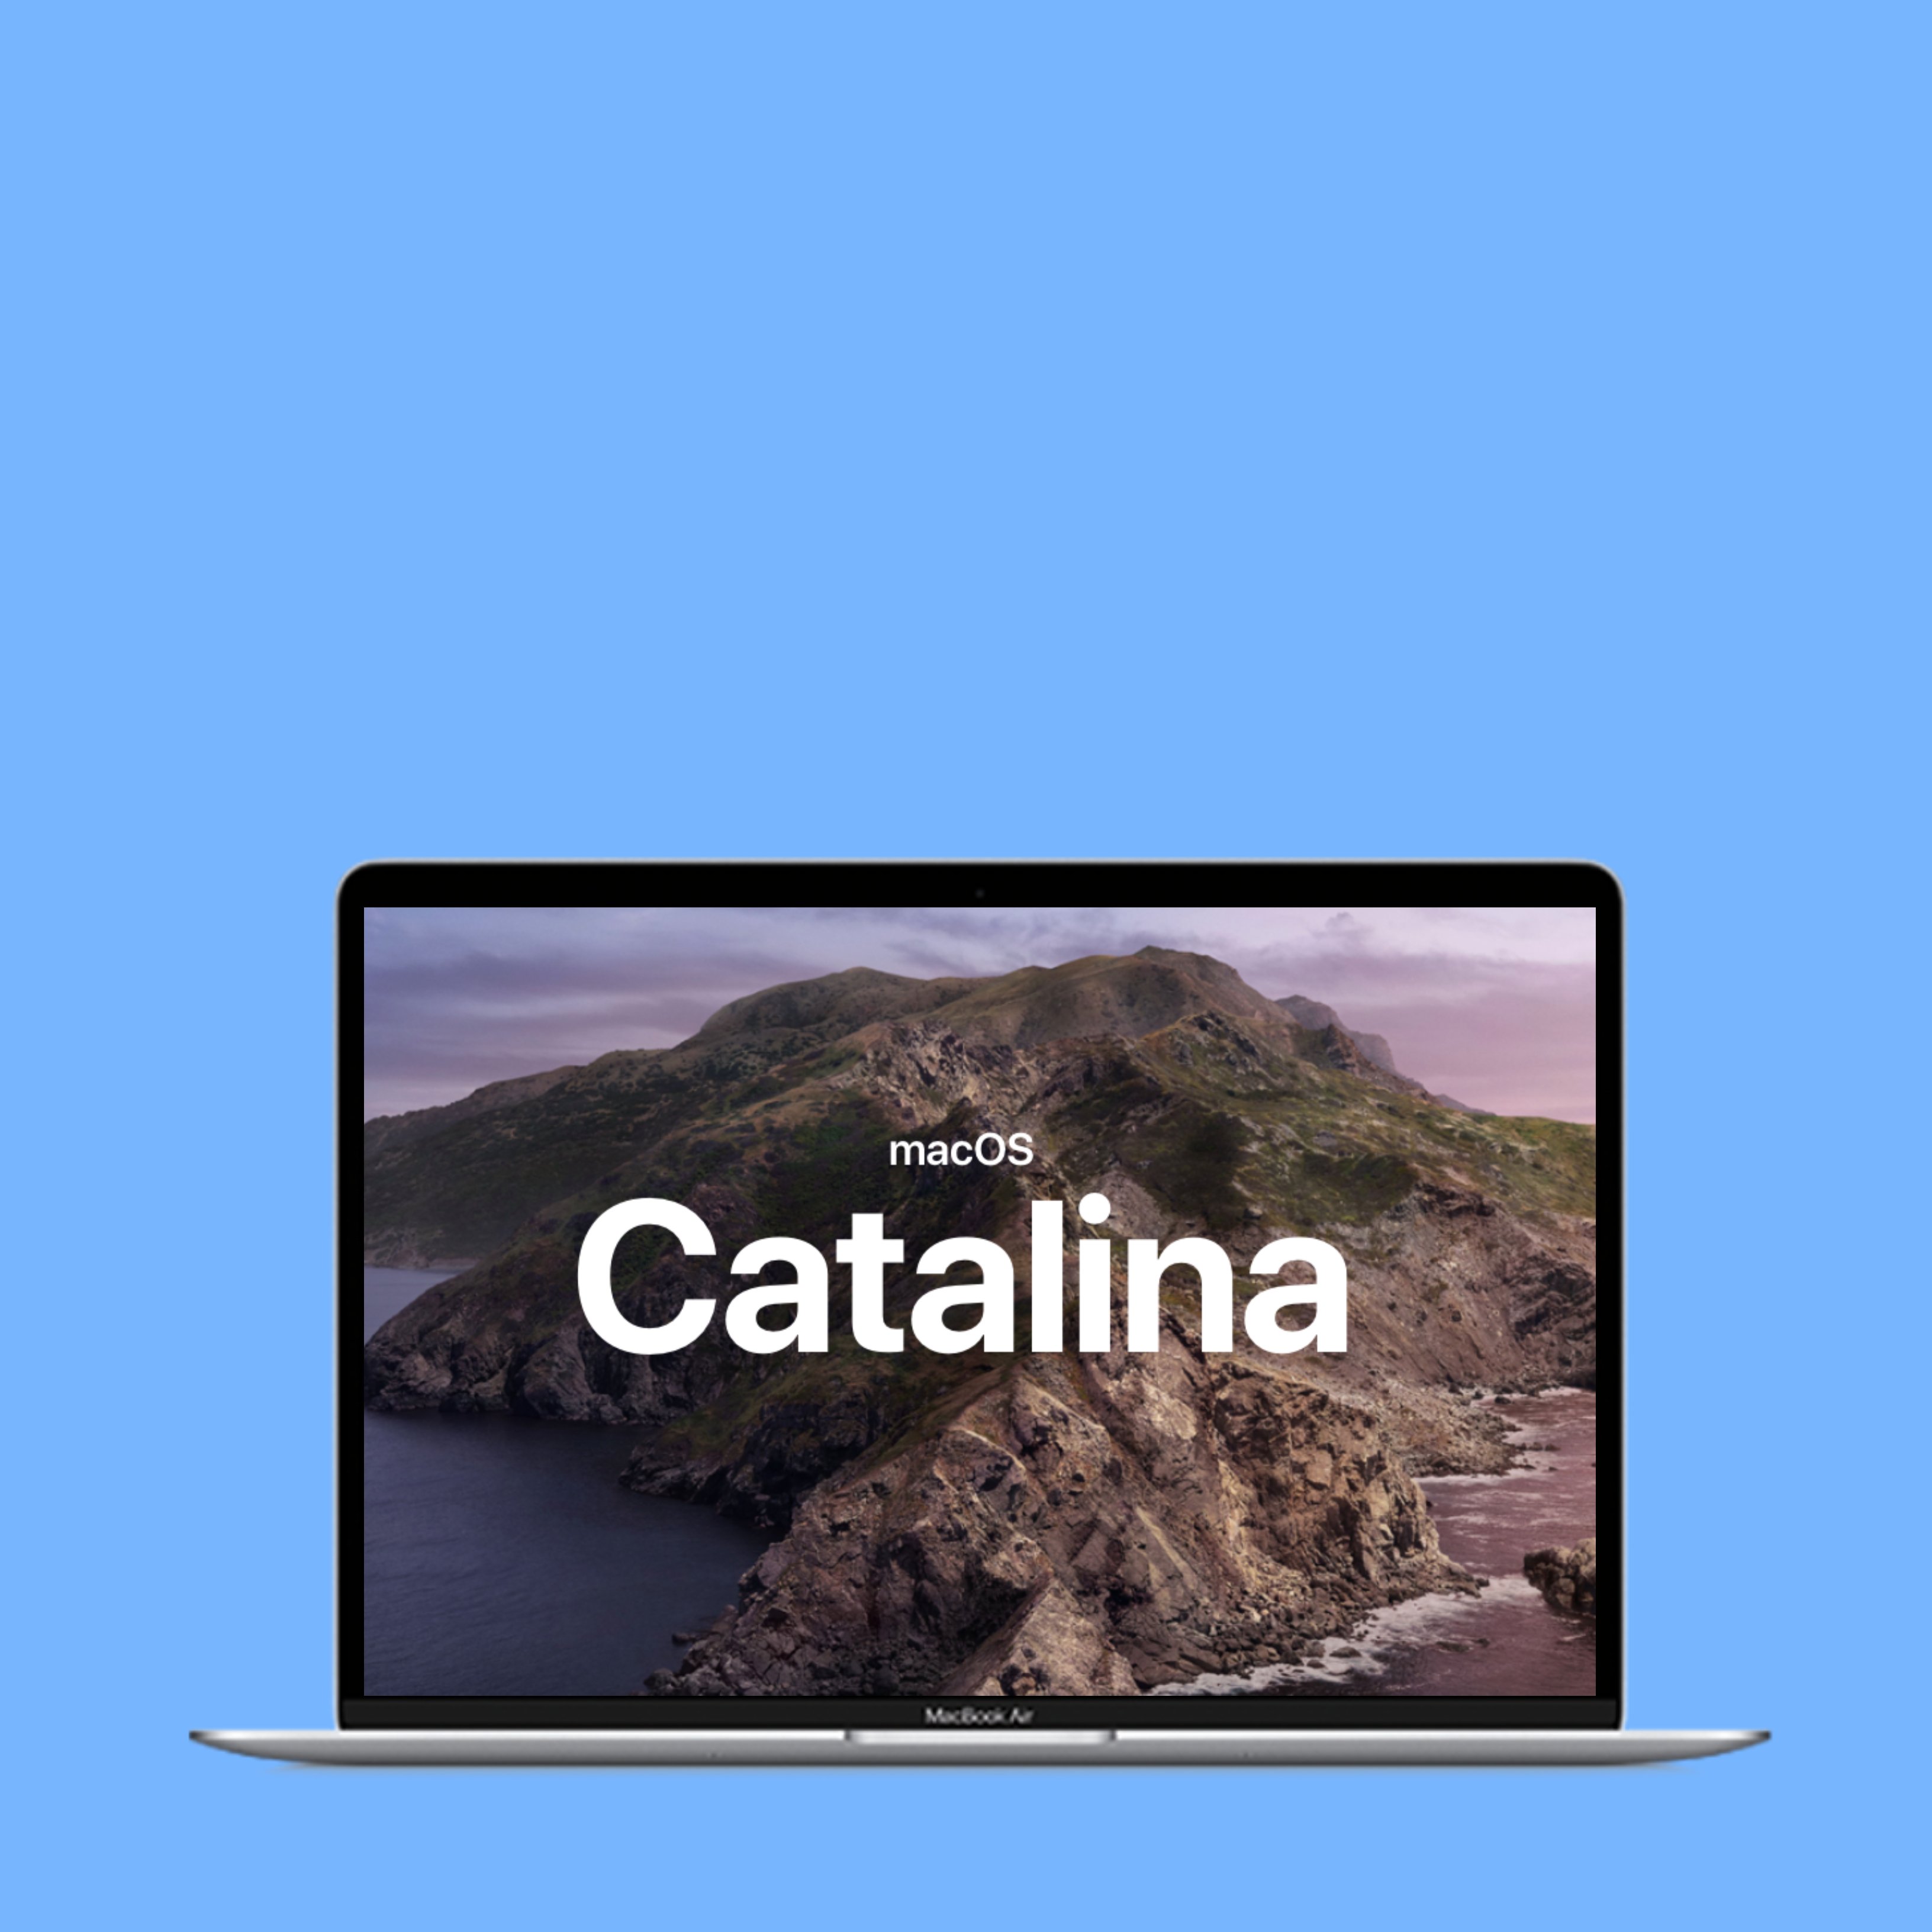 Más novedades Apple: hola a macOS Catalina y adiós a iTunes en los Mac